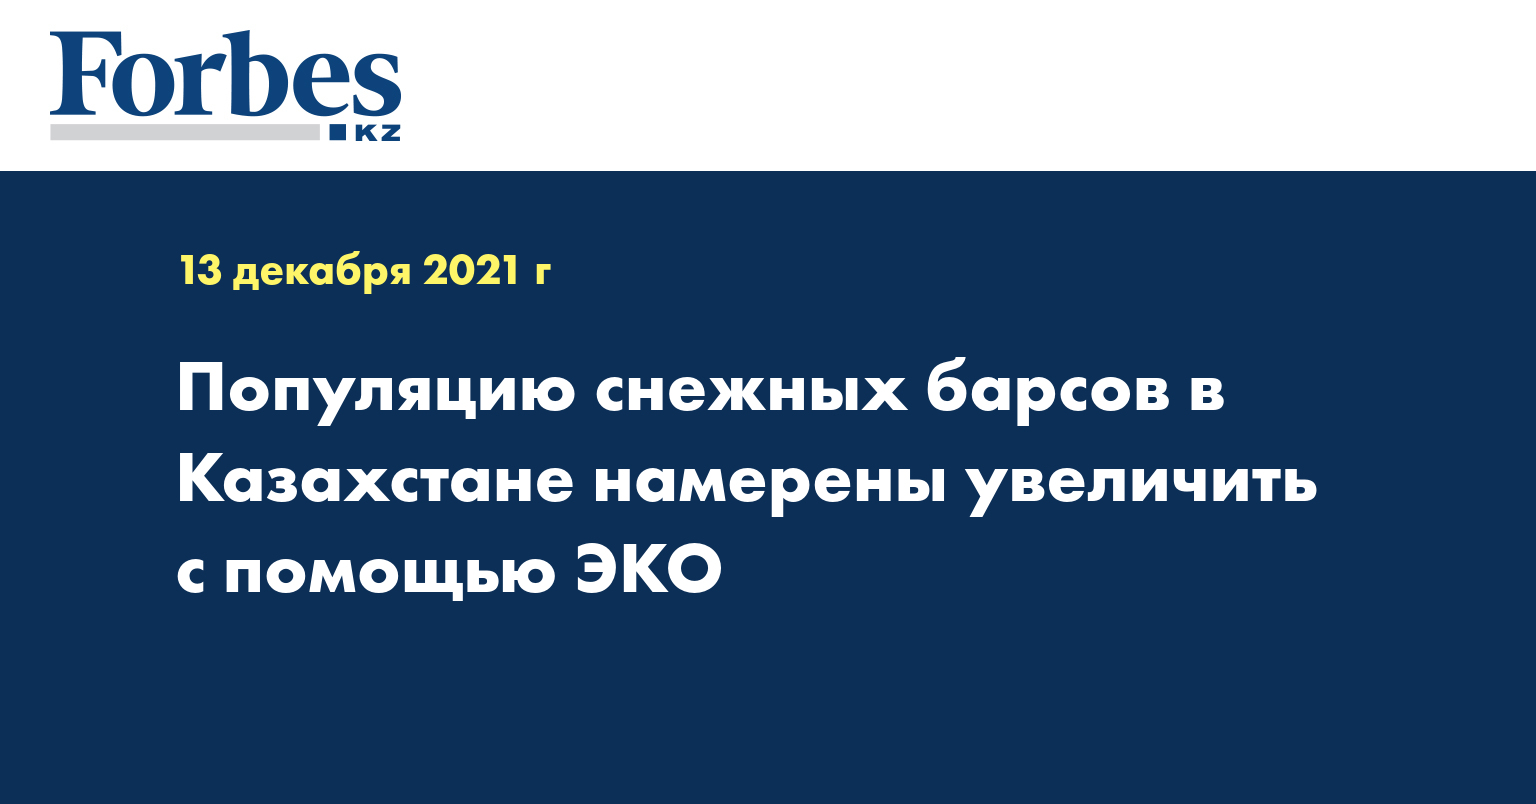 Популяцию снежных барсов в Казахстане намерены увеличить с помощью ЭКО 